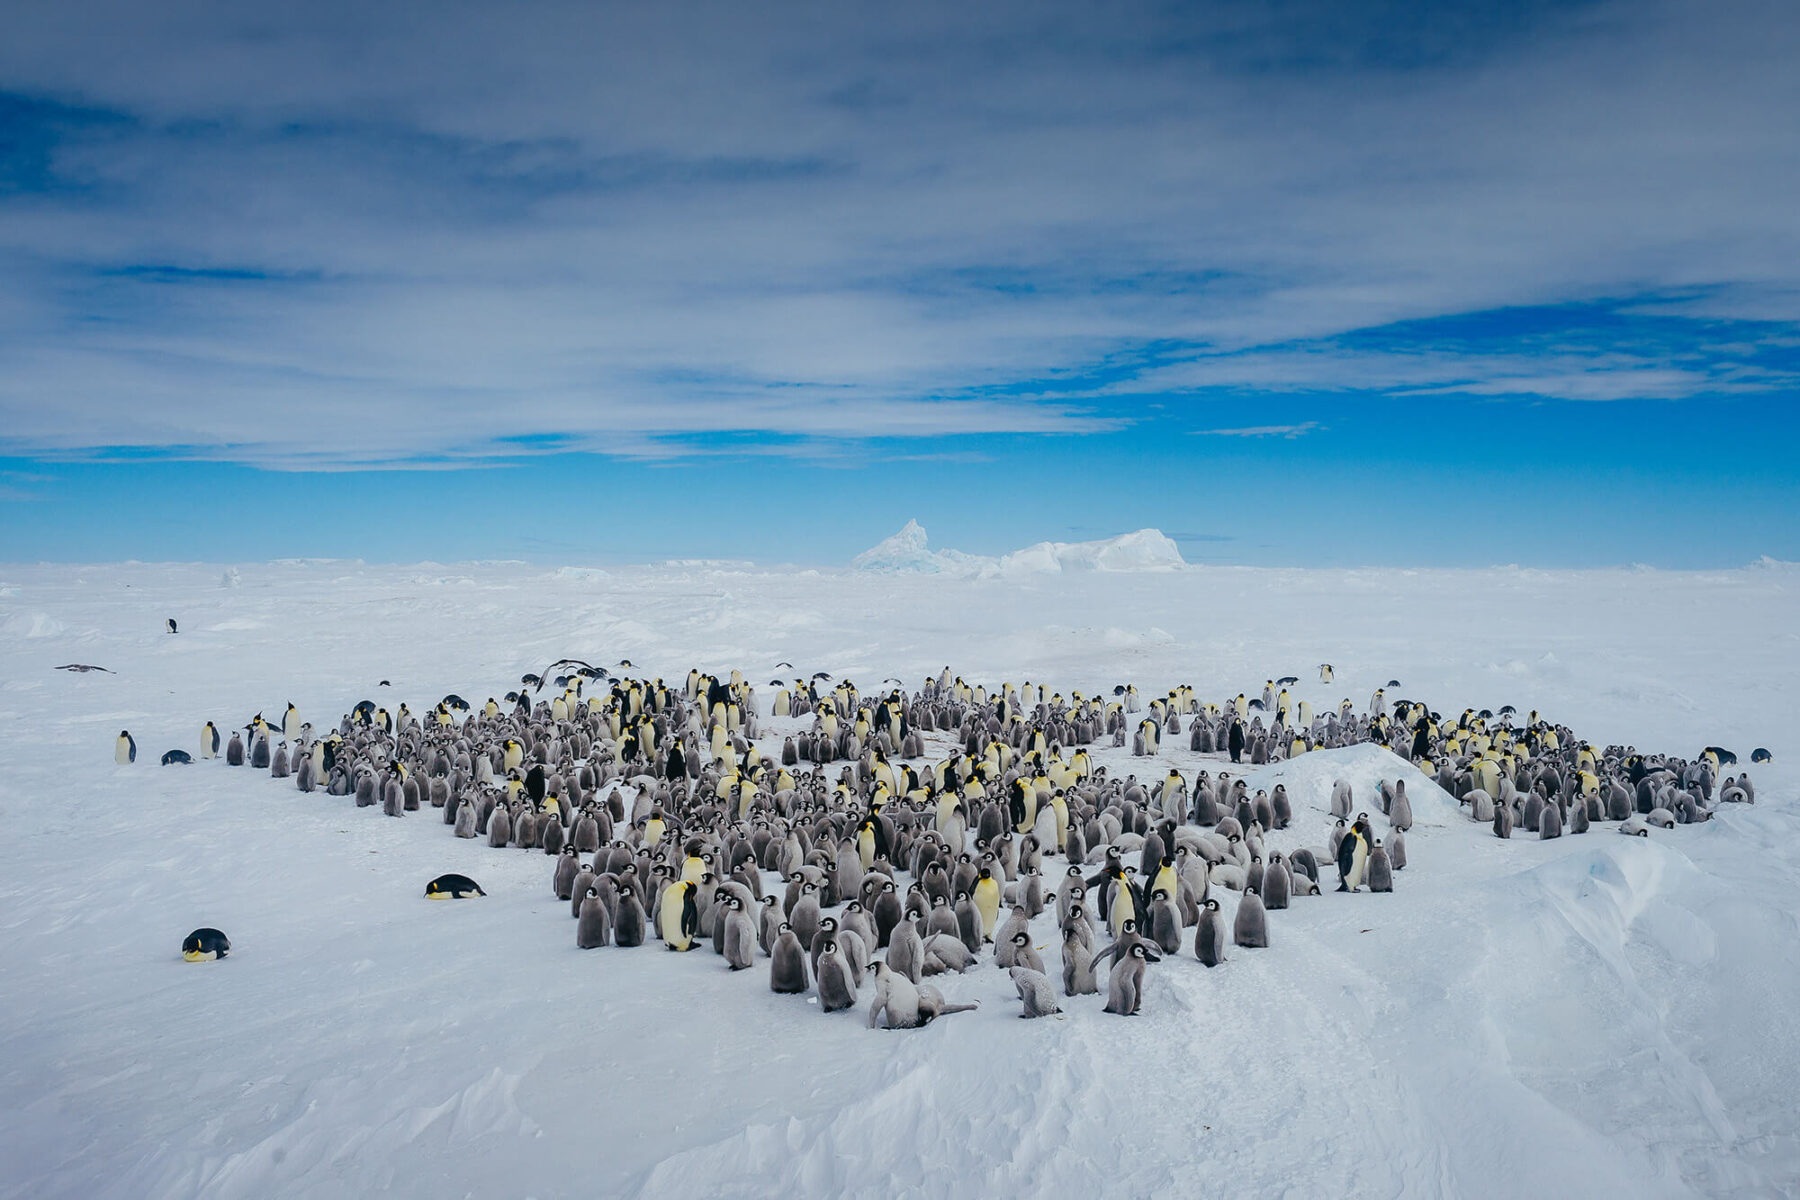 antarctica snow hill island emperor penguins qe